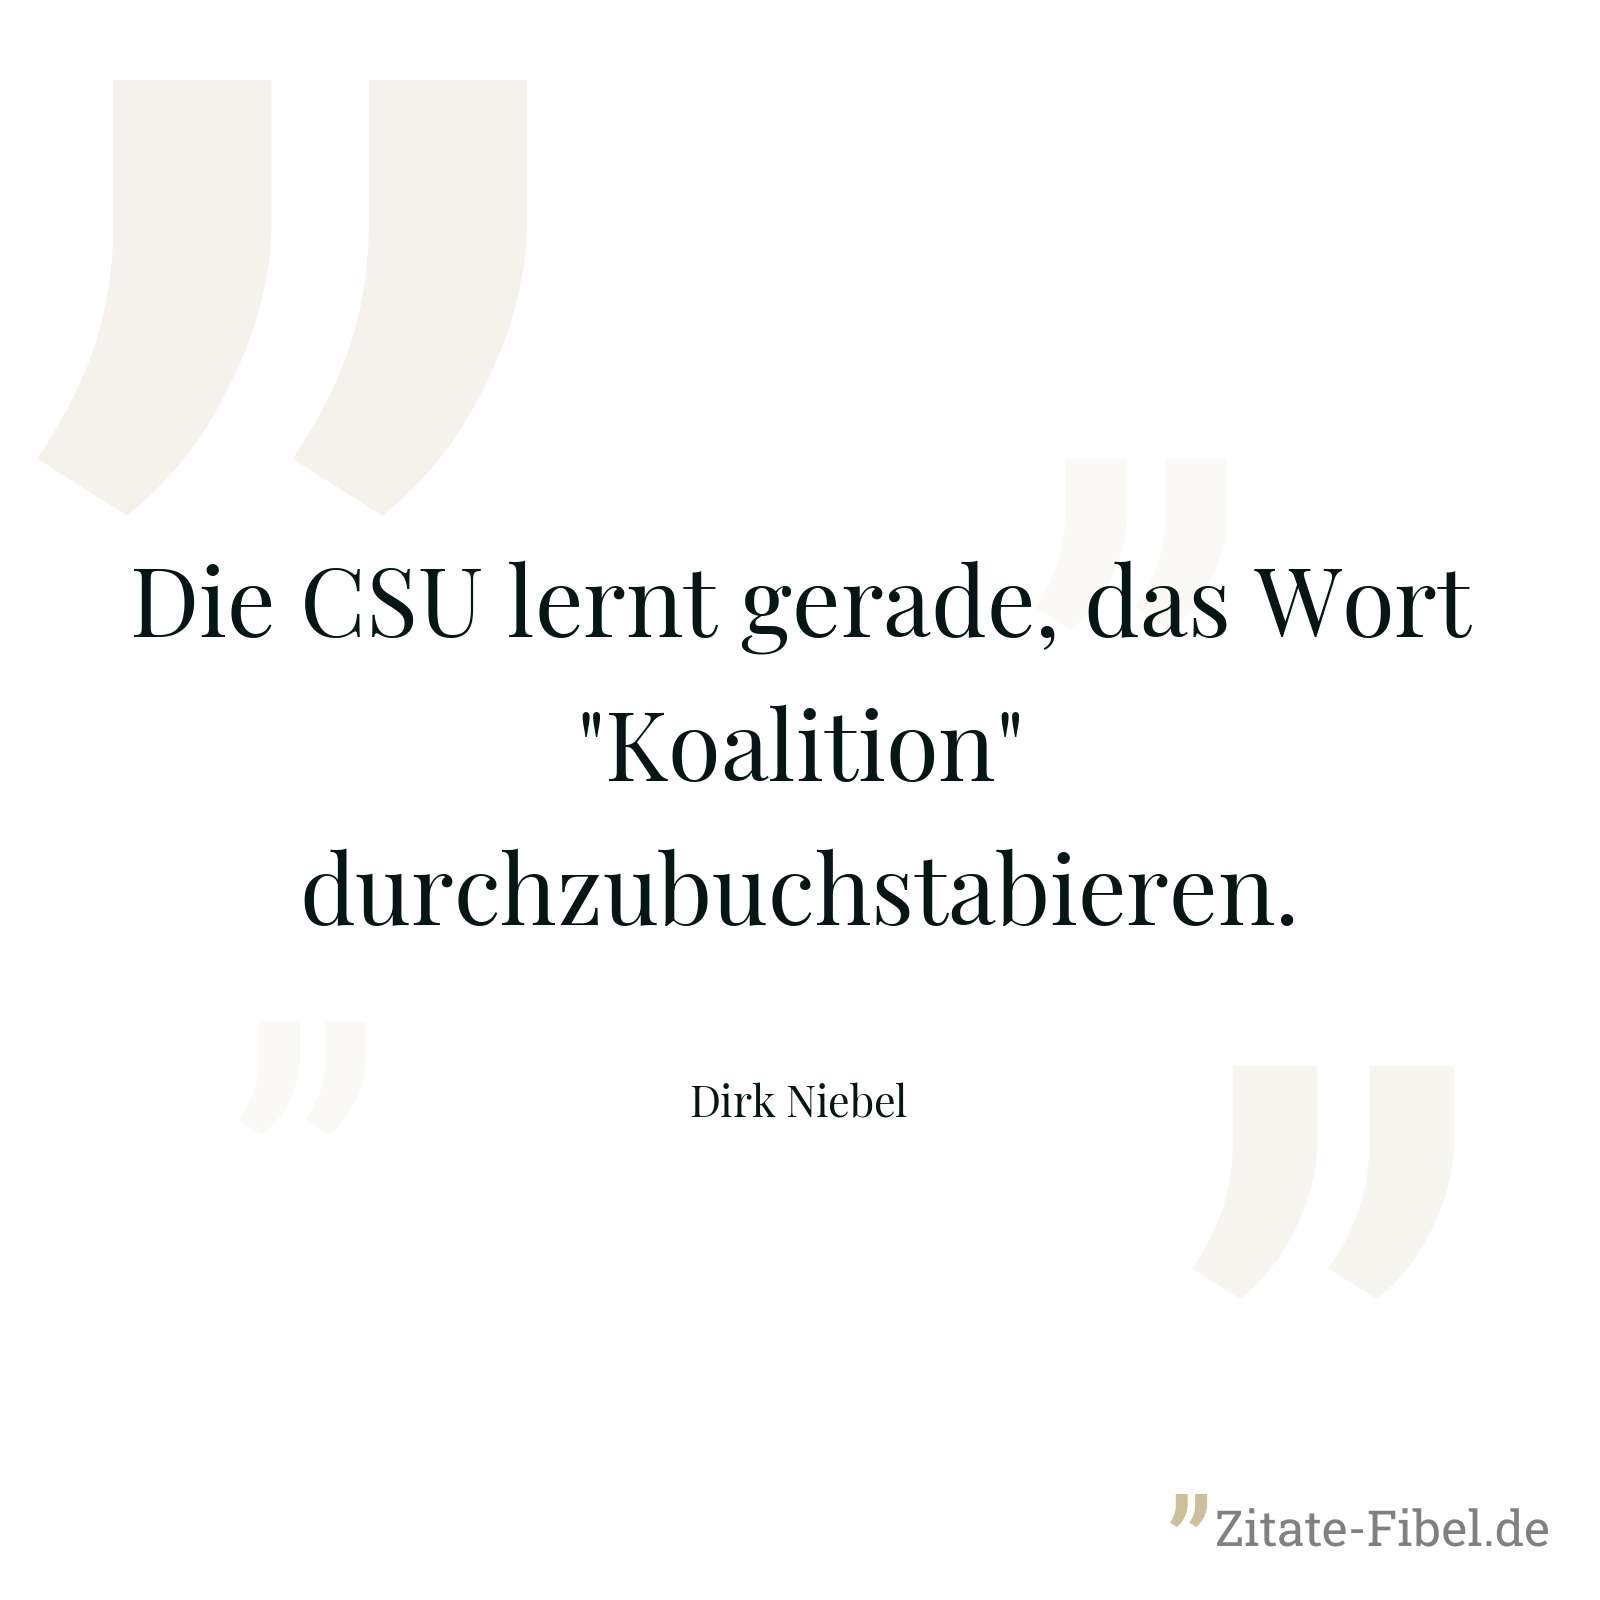 Die CSU lernt gerade, das Wort "Koalition" durchzubuchstabieren. - Dirk Niebel